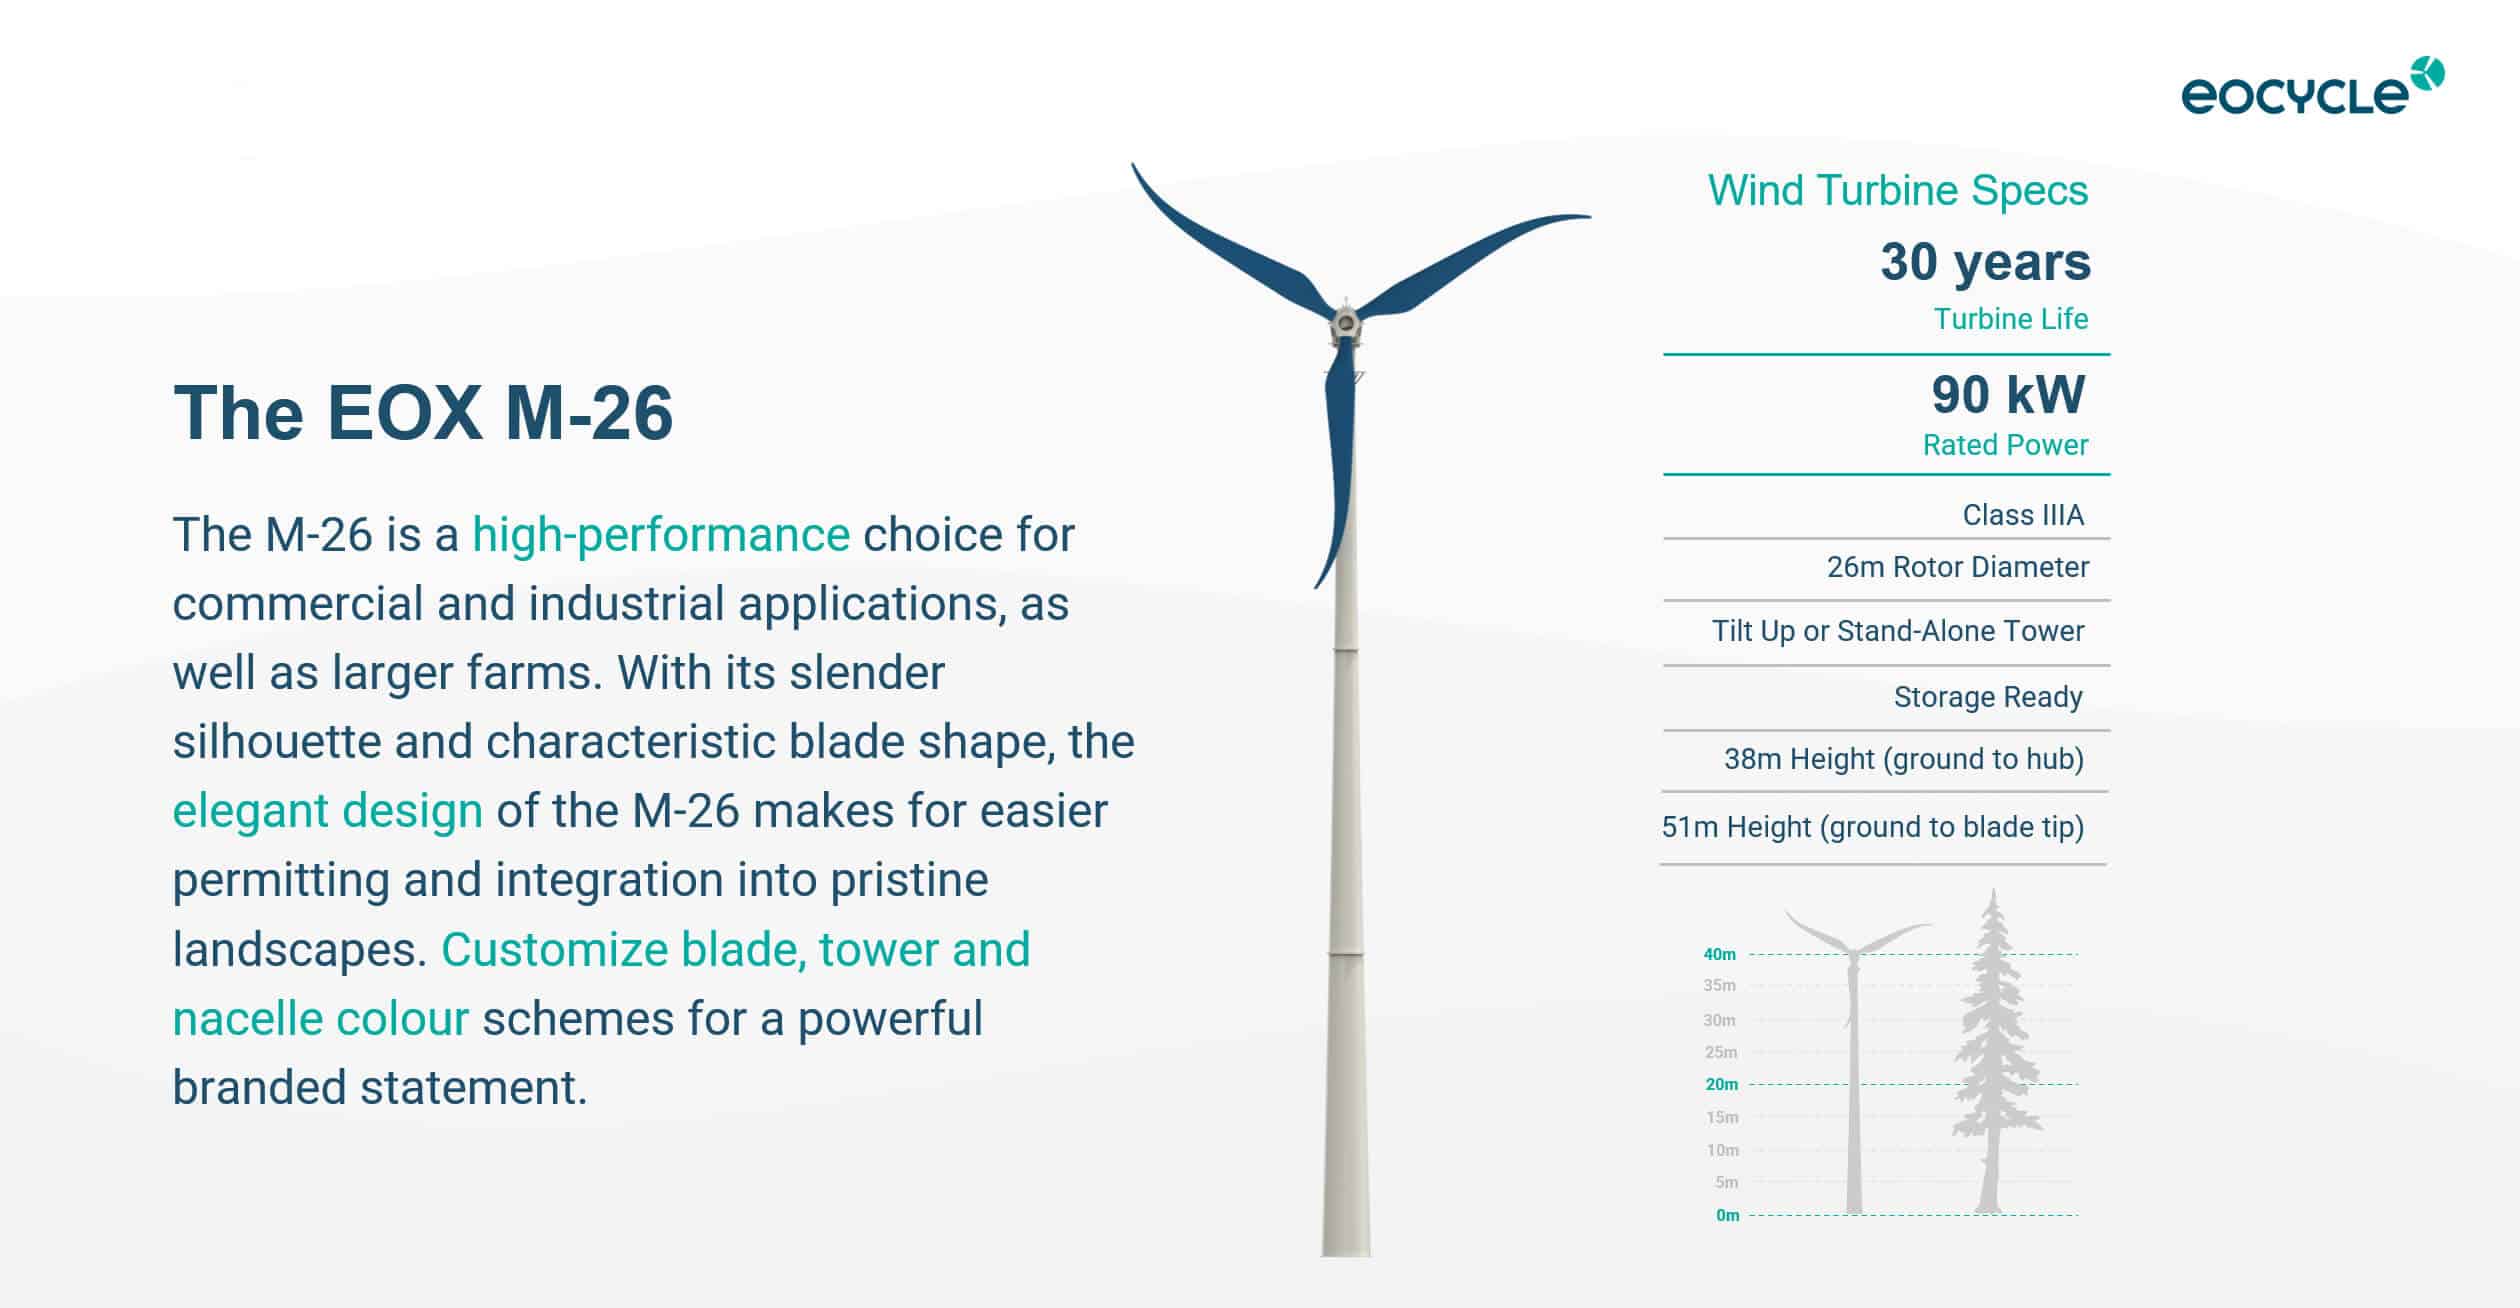 Eocycle EOX M-26 Wind Turbine